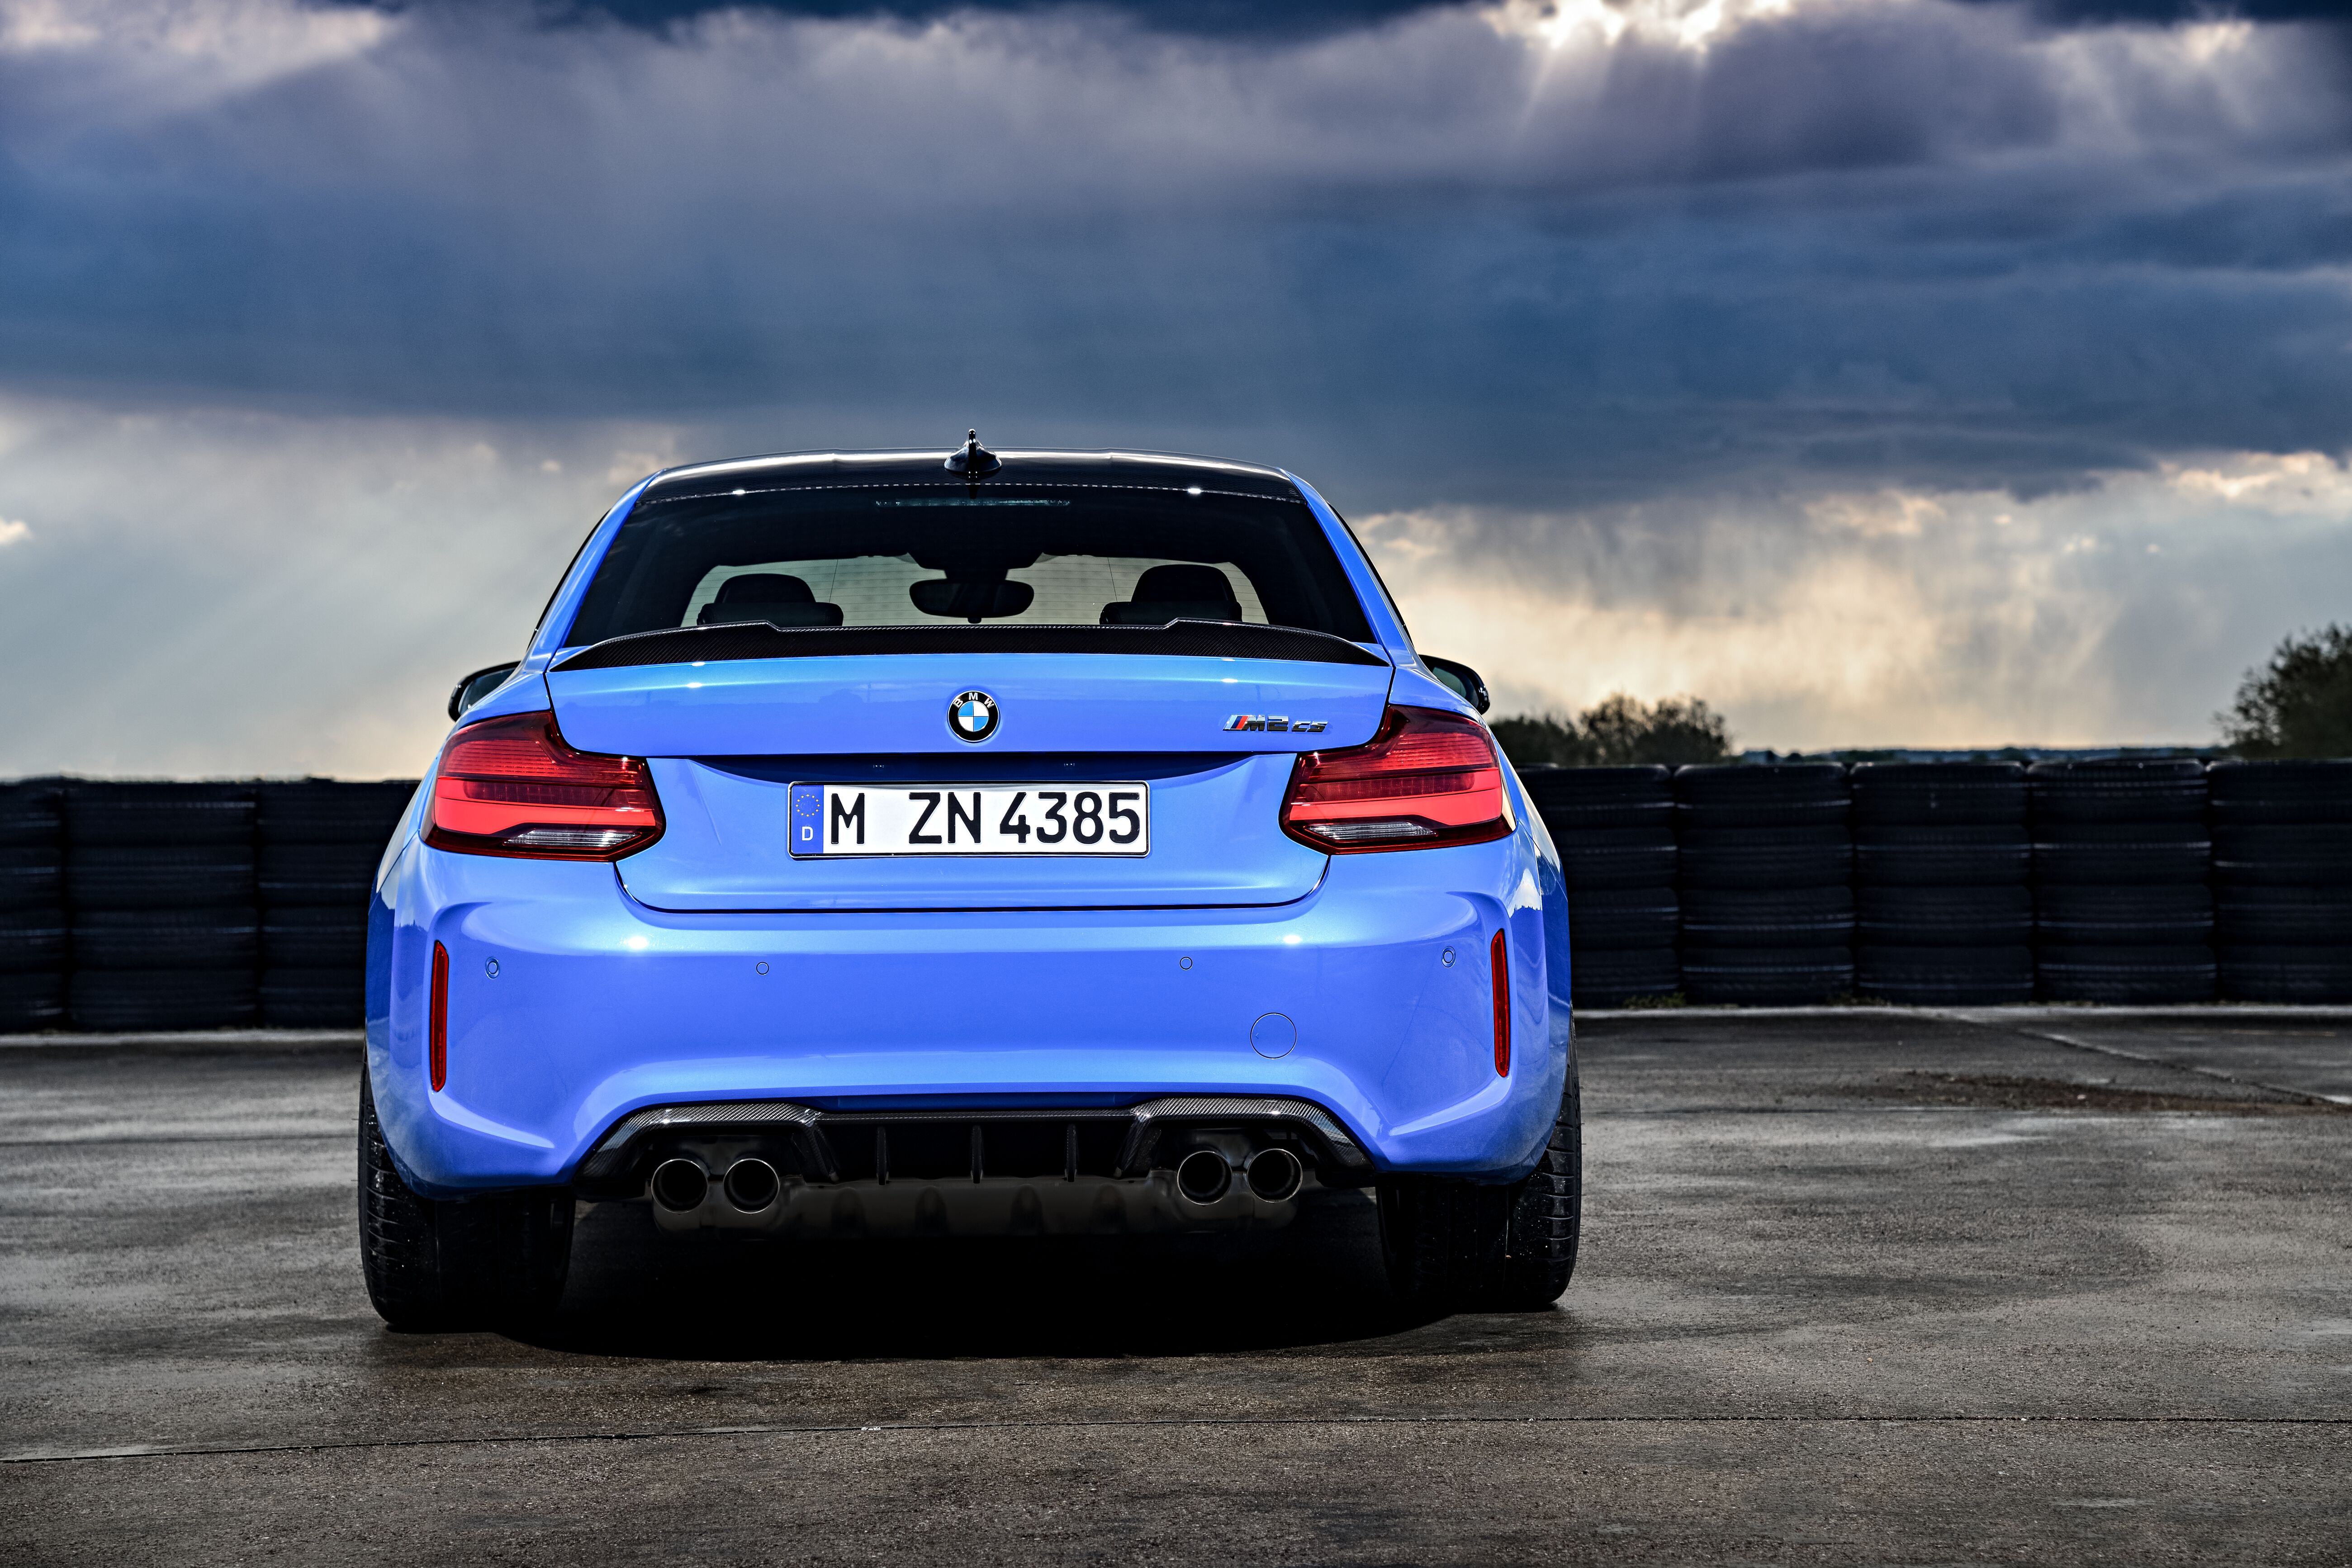 BMW تطلق سيارة BMW M2 CS الجديدة بإصدار محدود - 9cnews